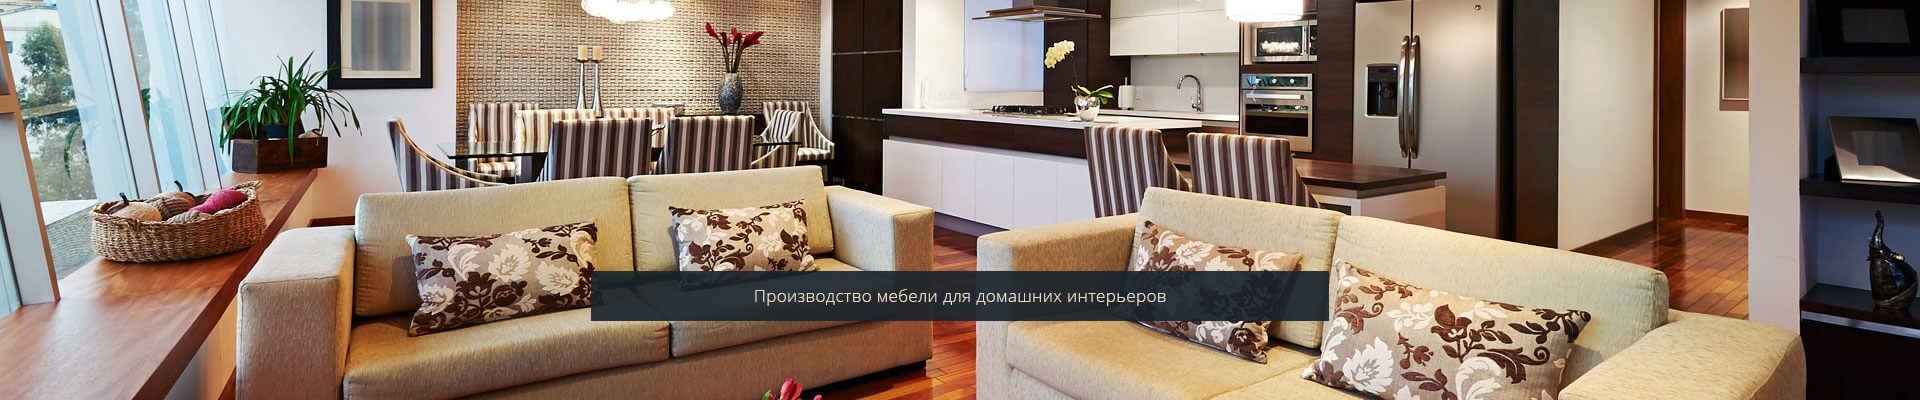 Мебель для домашних интерьеров